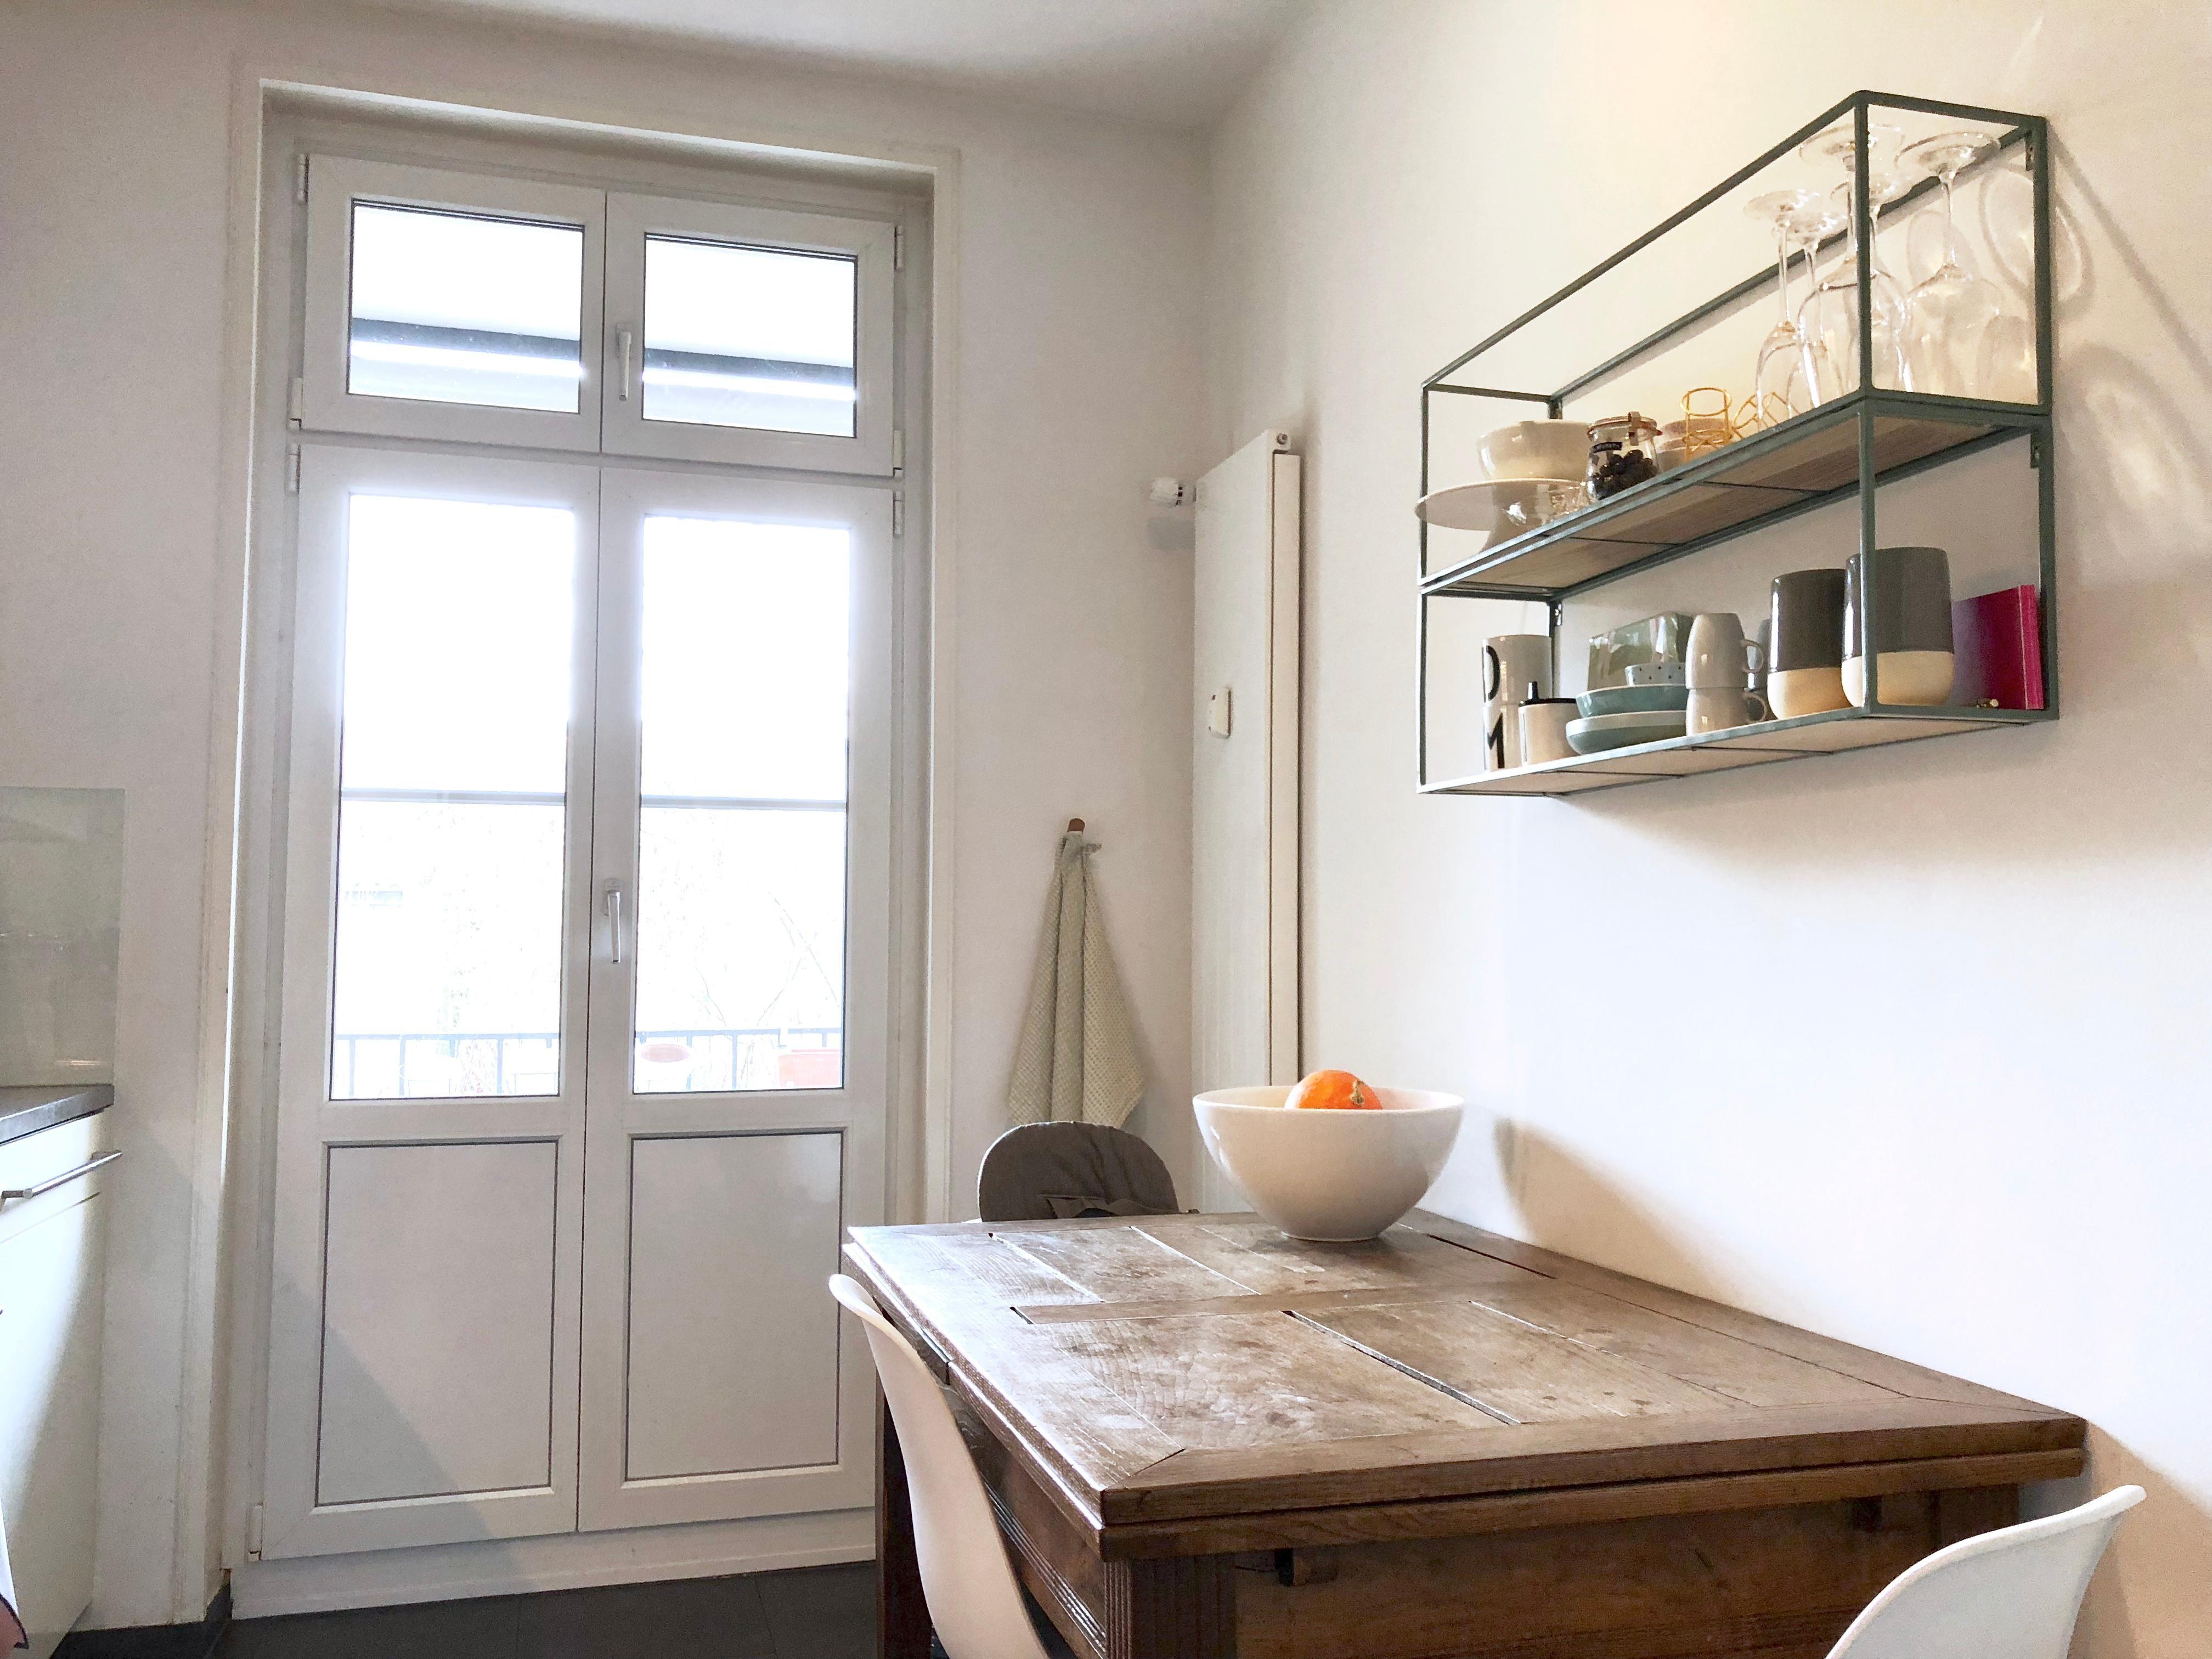 Küchenleben #kitchen #shelfie #minimal #interiordesign #scandinavianstyle #nordicliving #kitchendeco